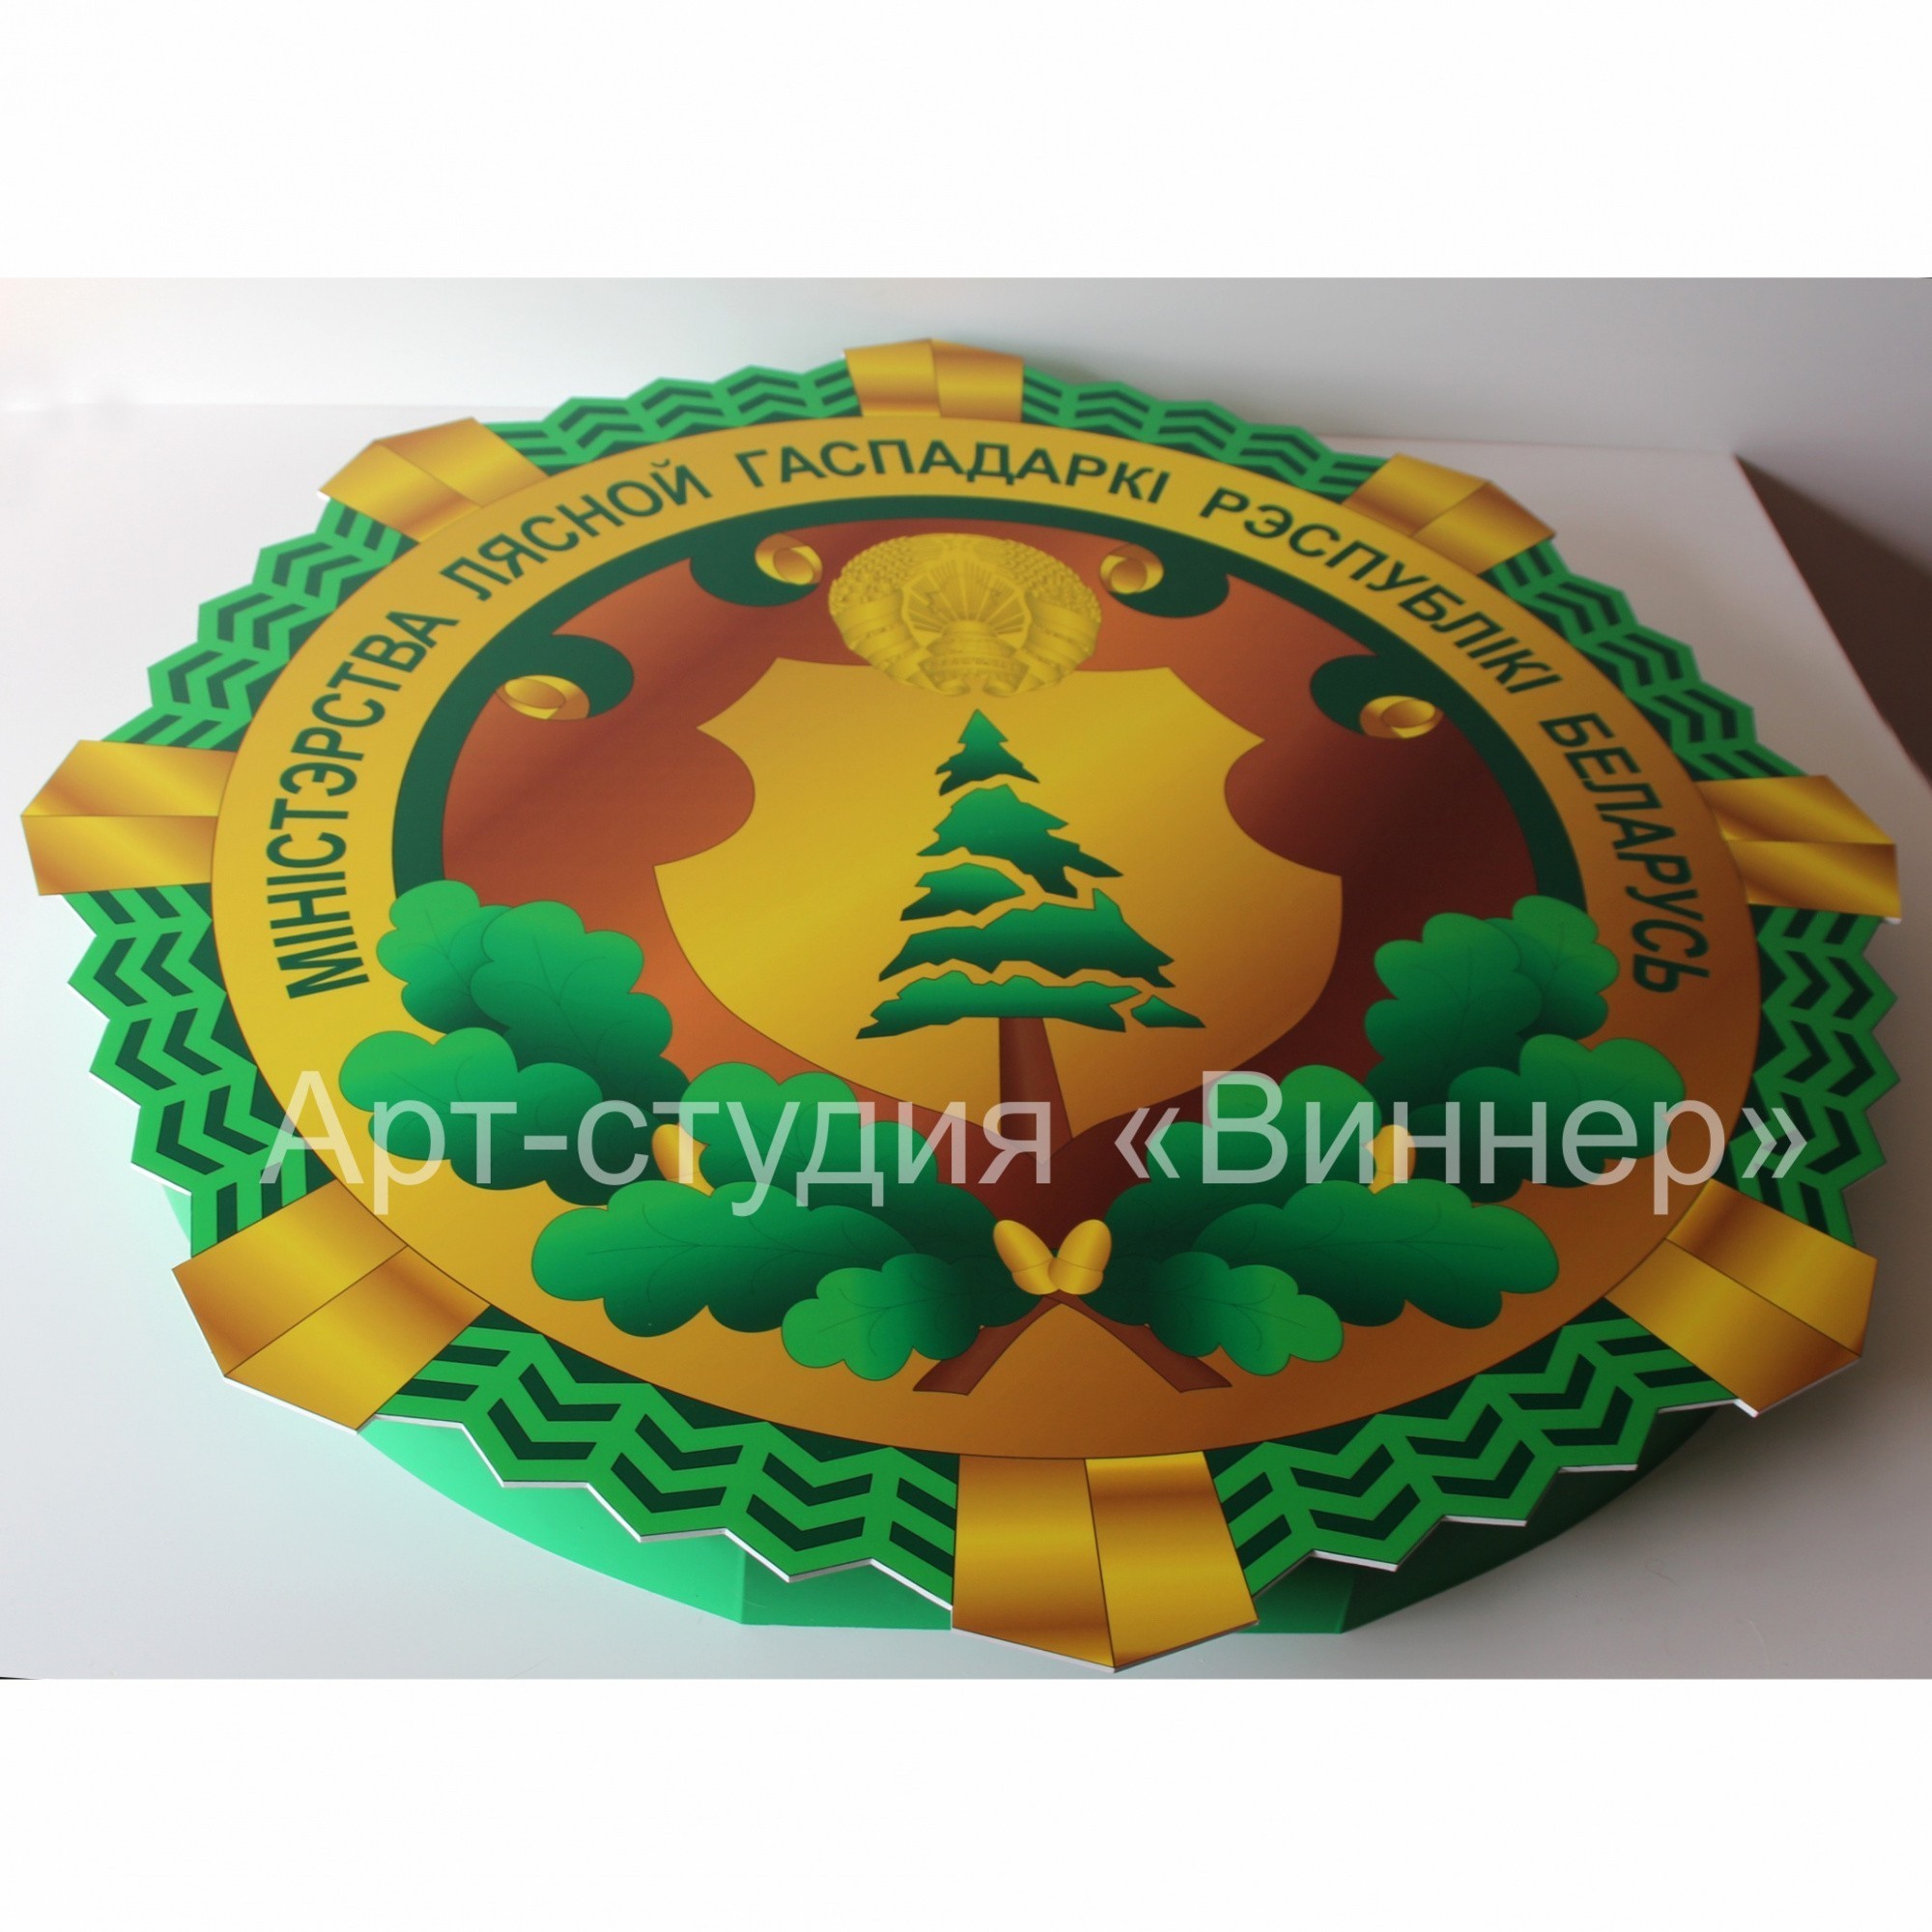 Логотип Министерства лесного хозяйства Республики Беларусь - фото3